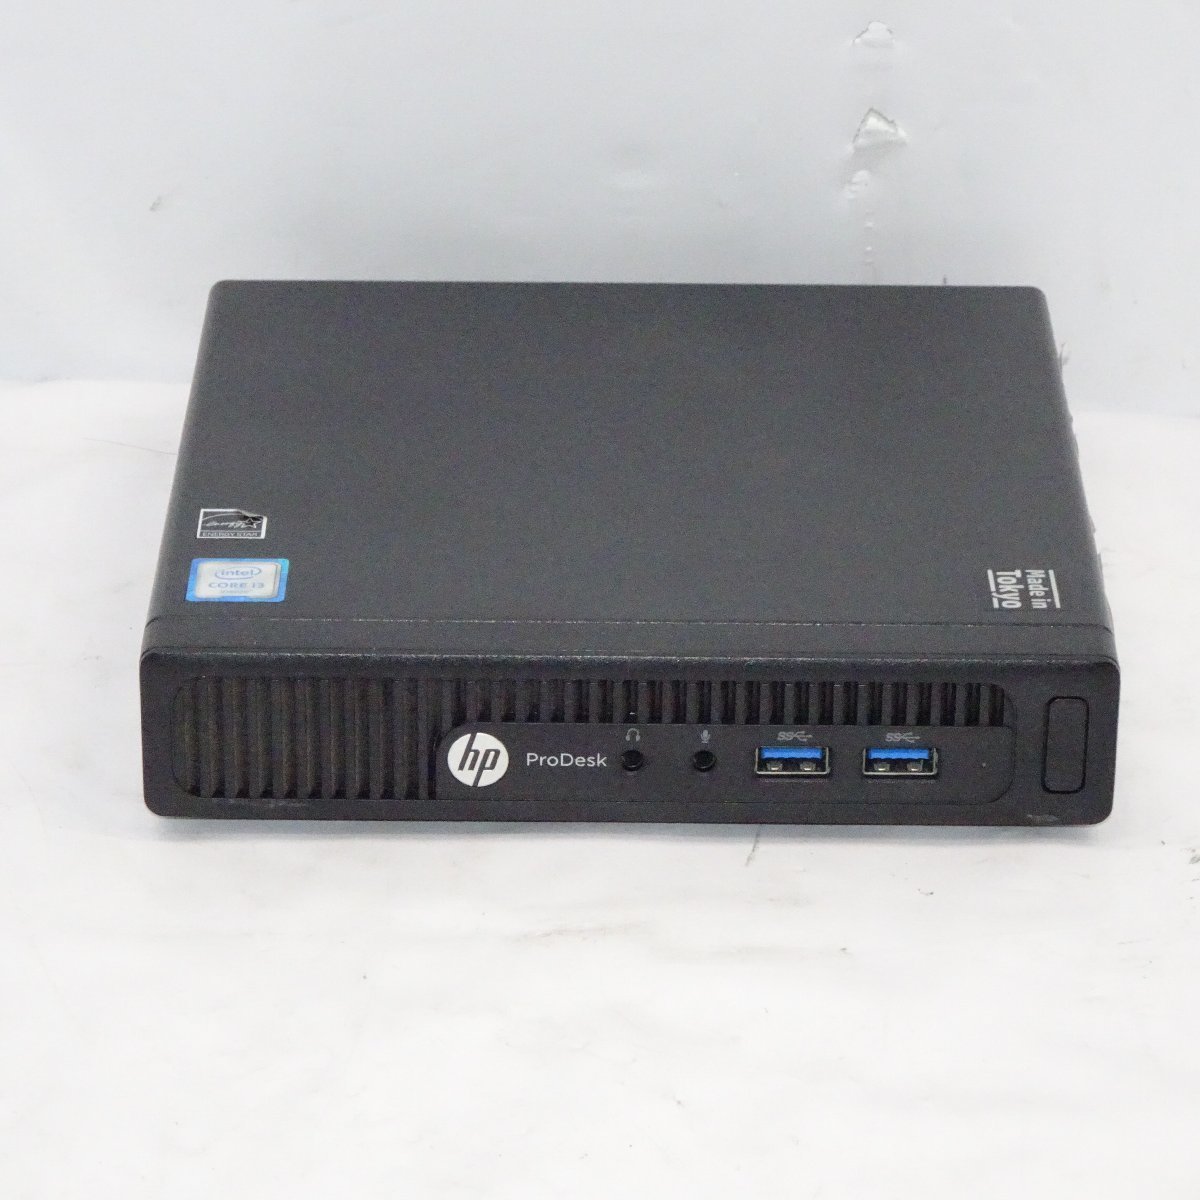 【中古MiniPC 購入者様特典有り】HP ProDesk 400 G2 DM デスクトップ型PC セール公式